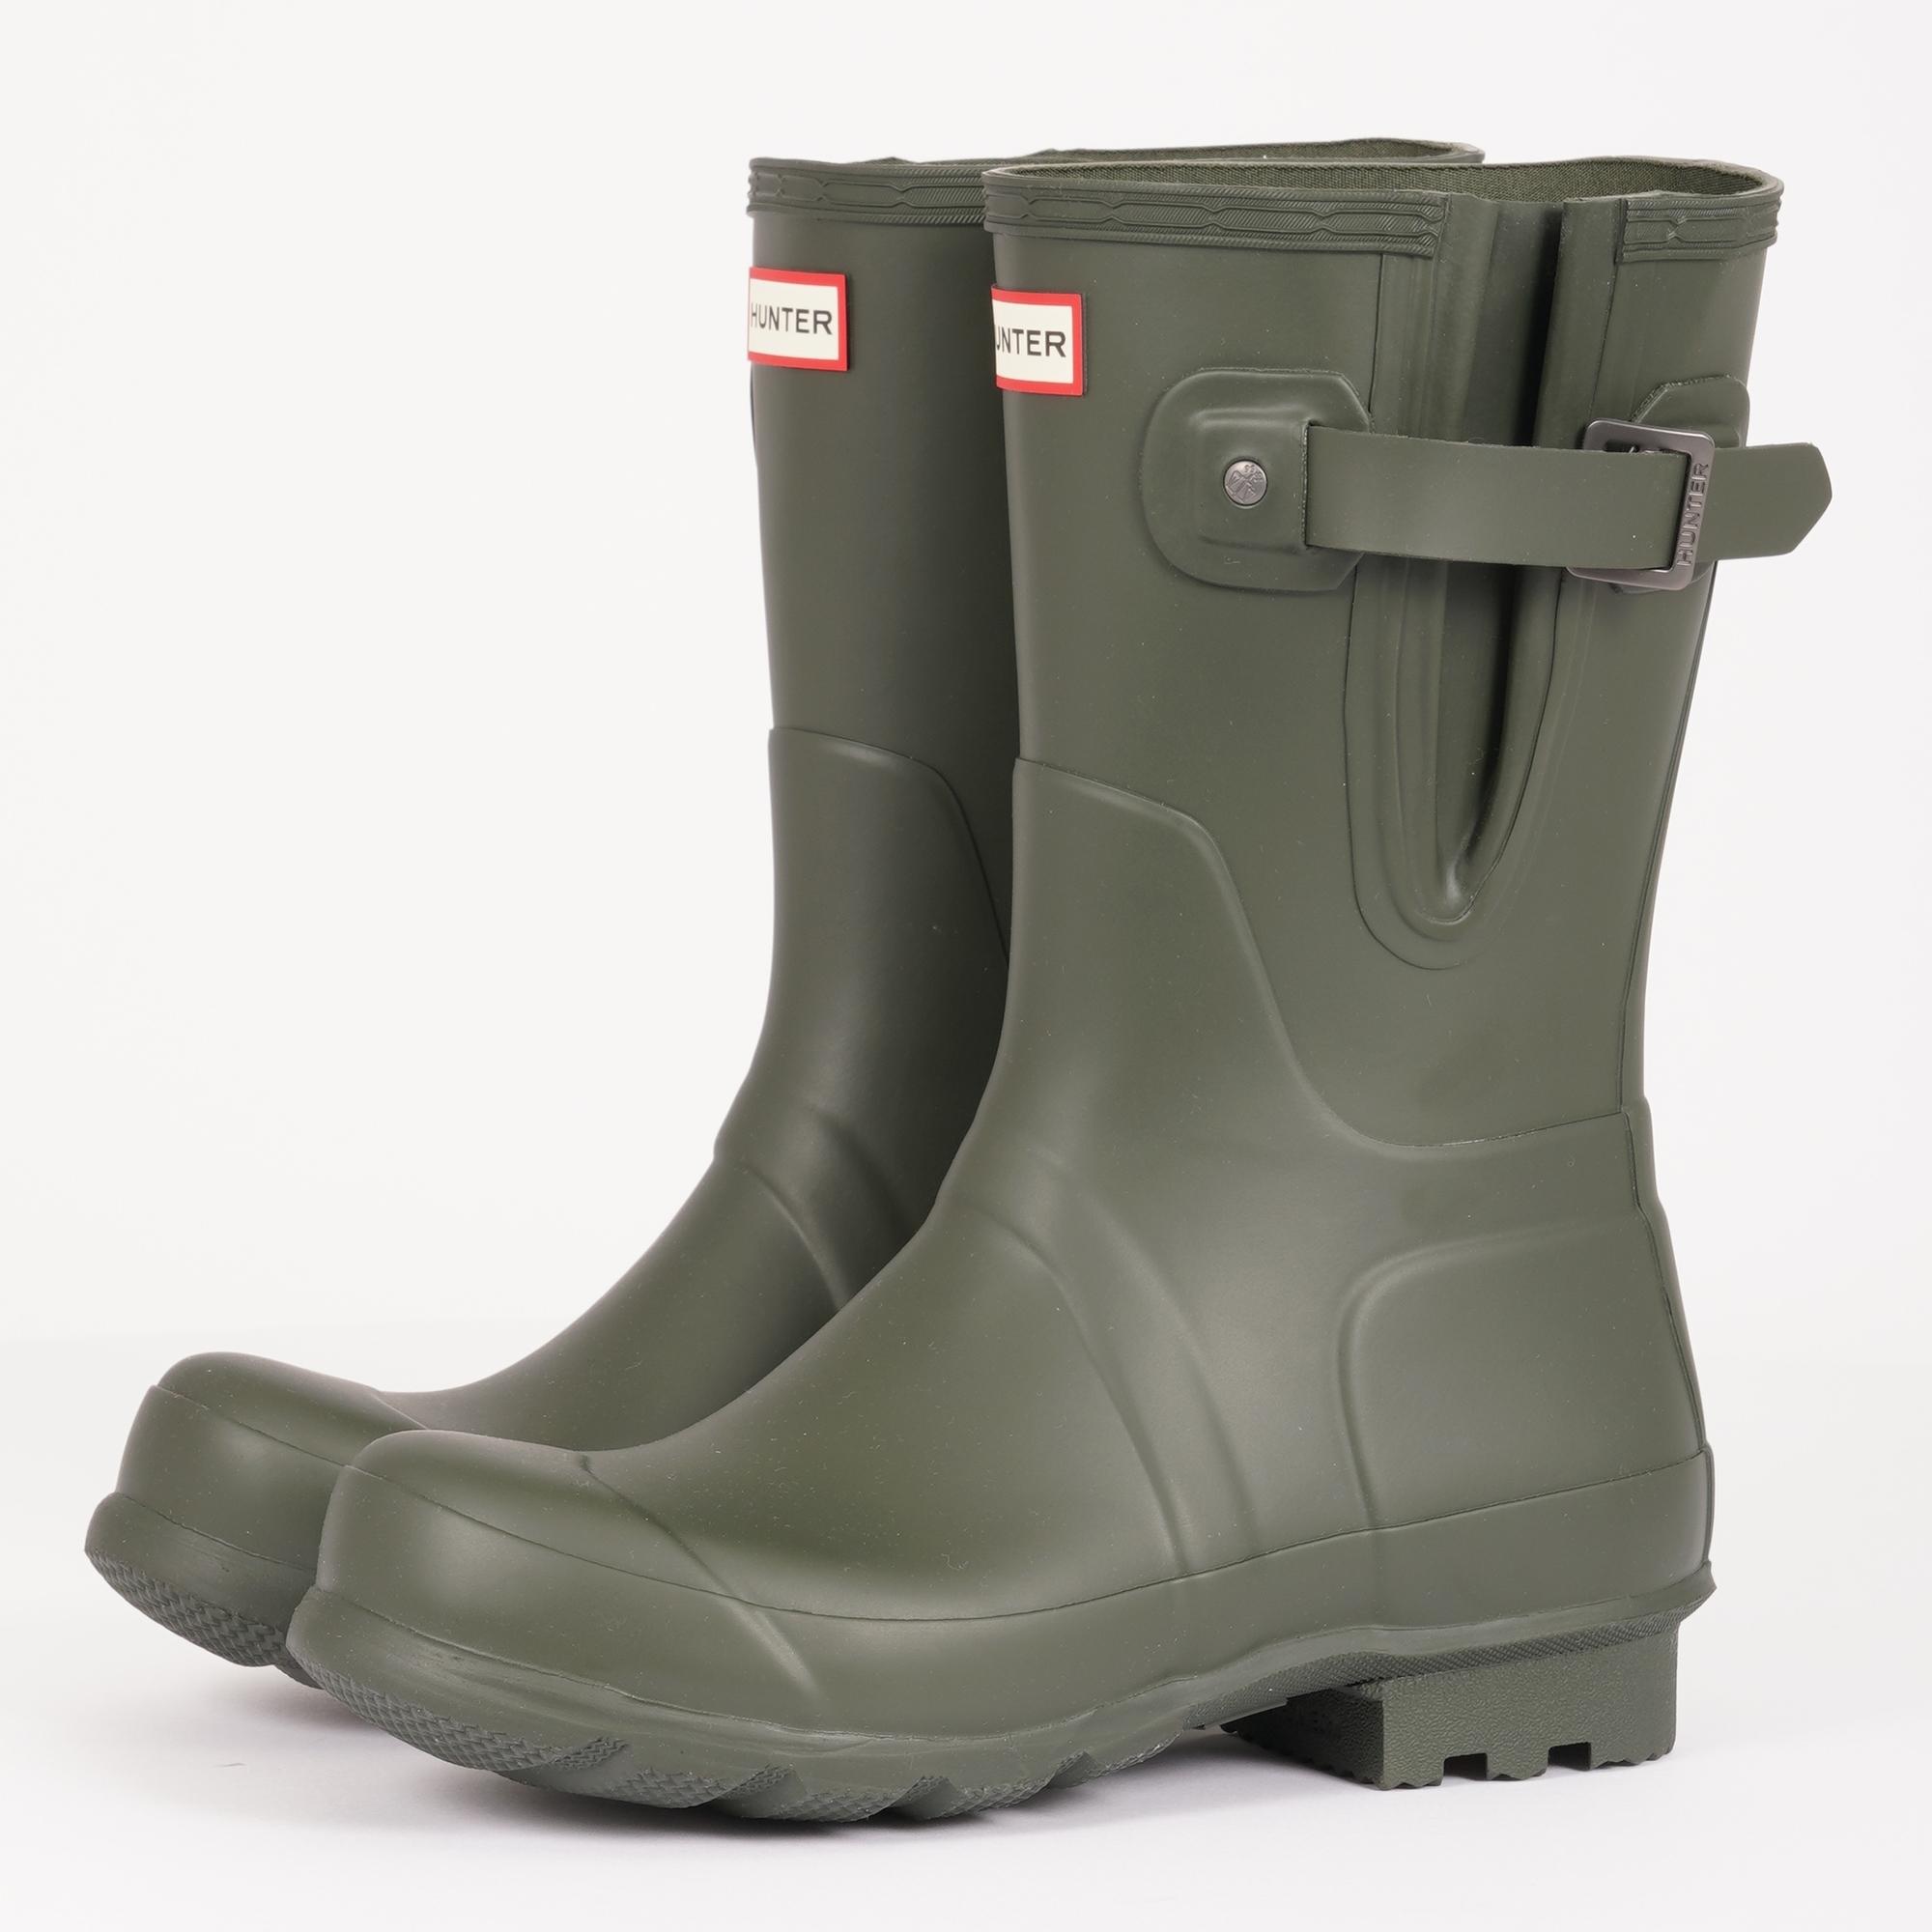 Lyst - HUNTER Side Adjustable Short Wellington Boots - Dark Olive in ...